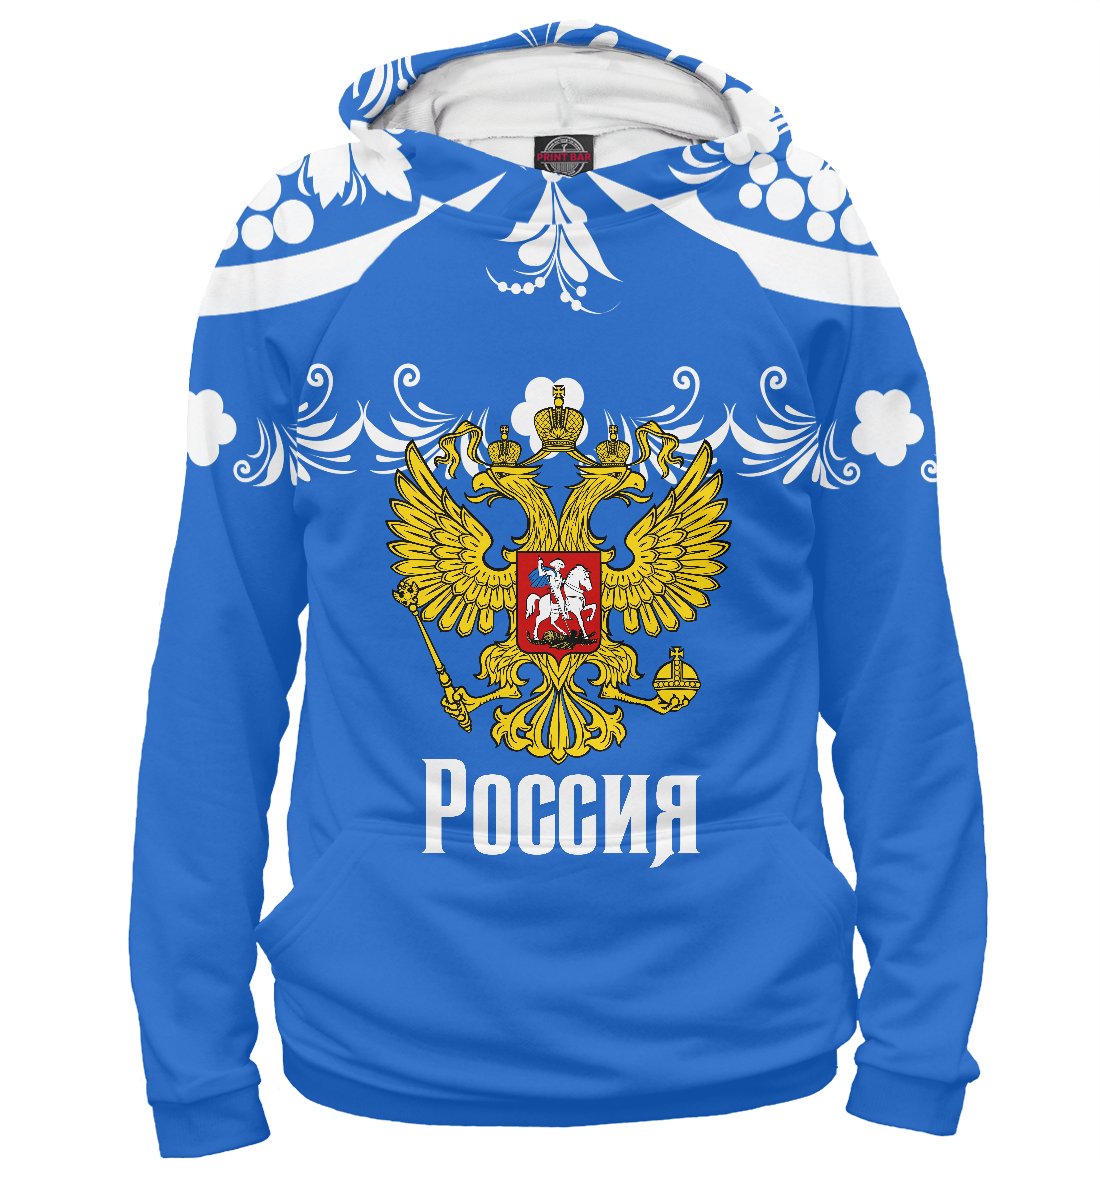 Спортивный костюм с Российской символикой